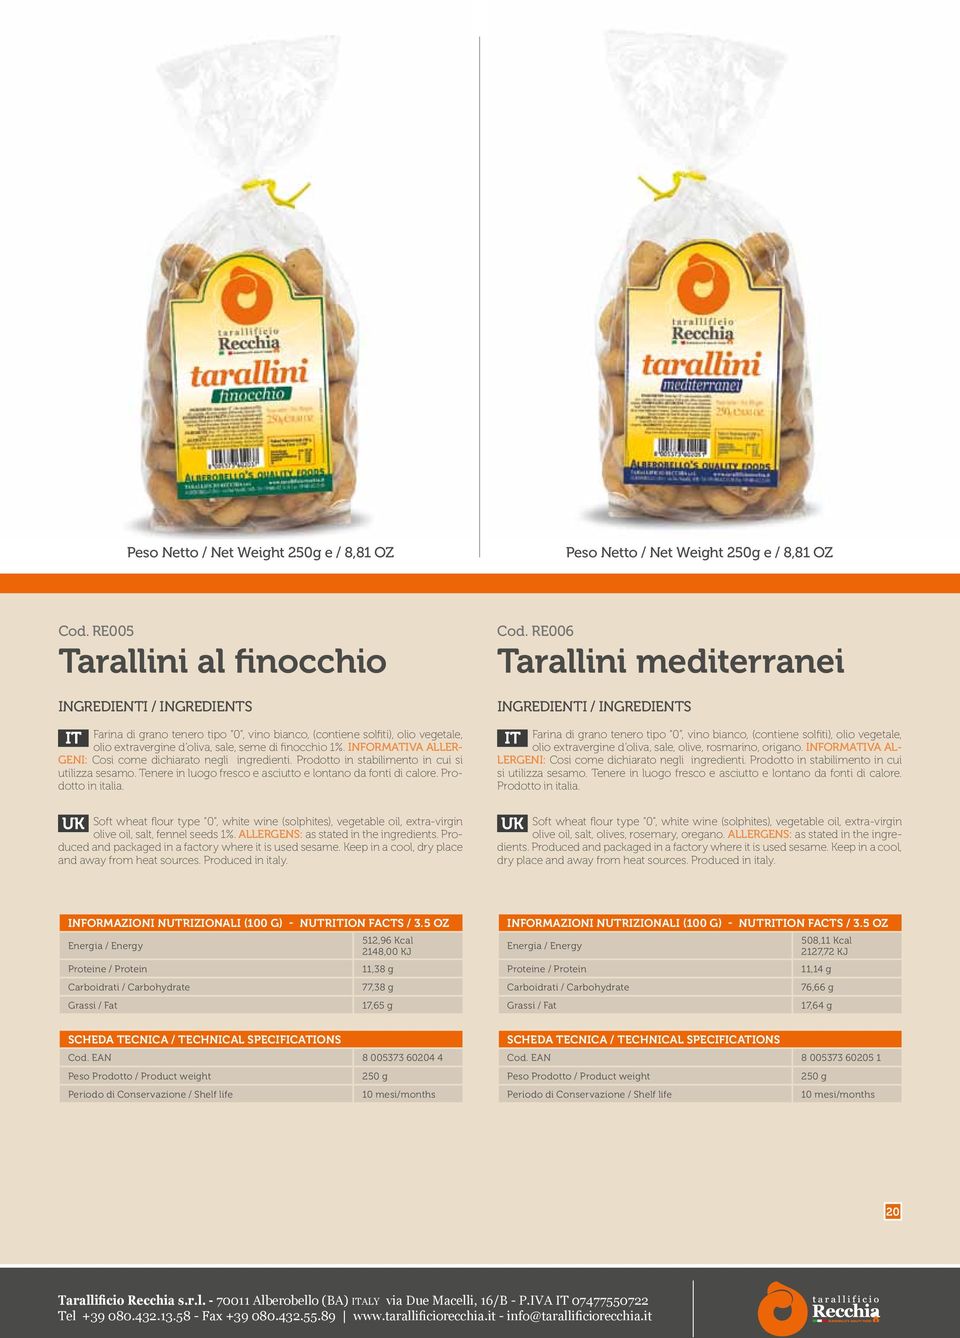 Cod. RE006 Tarallini mediterranei olio extravergine d oliva, sale, olive, rosmarino, origano. INFORMATIVA AL- LERGENI: Cosi come dichiarato negli ingredienti.